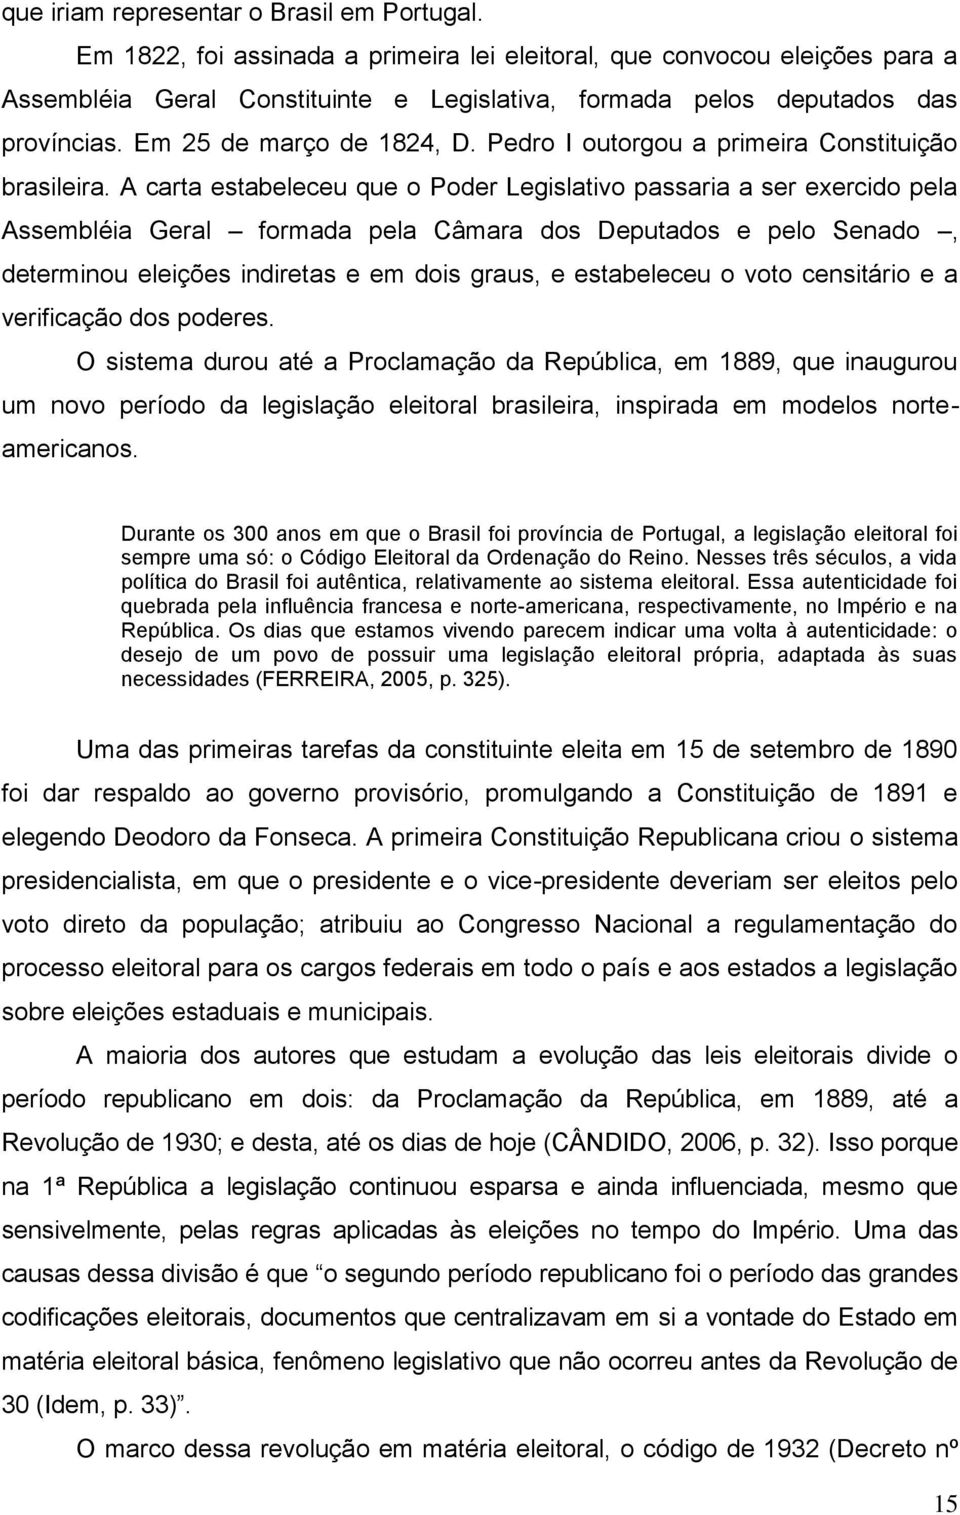 Pedro I outorgou a primeira Constituição brasileira.